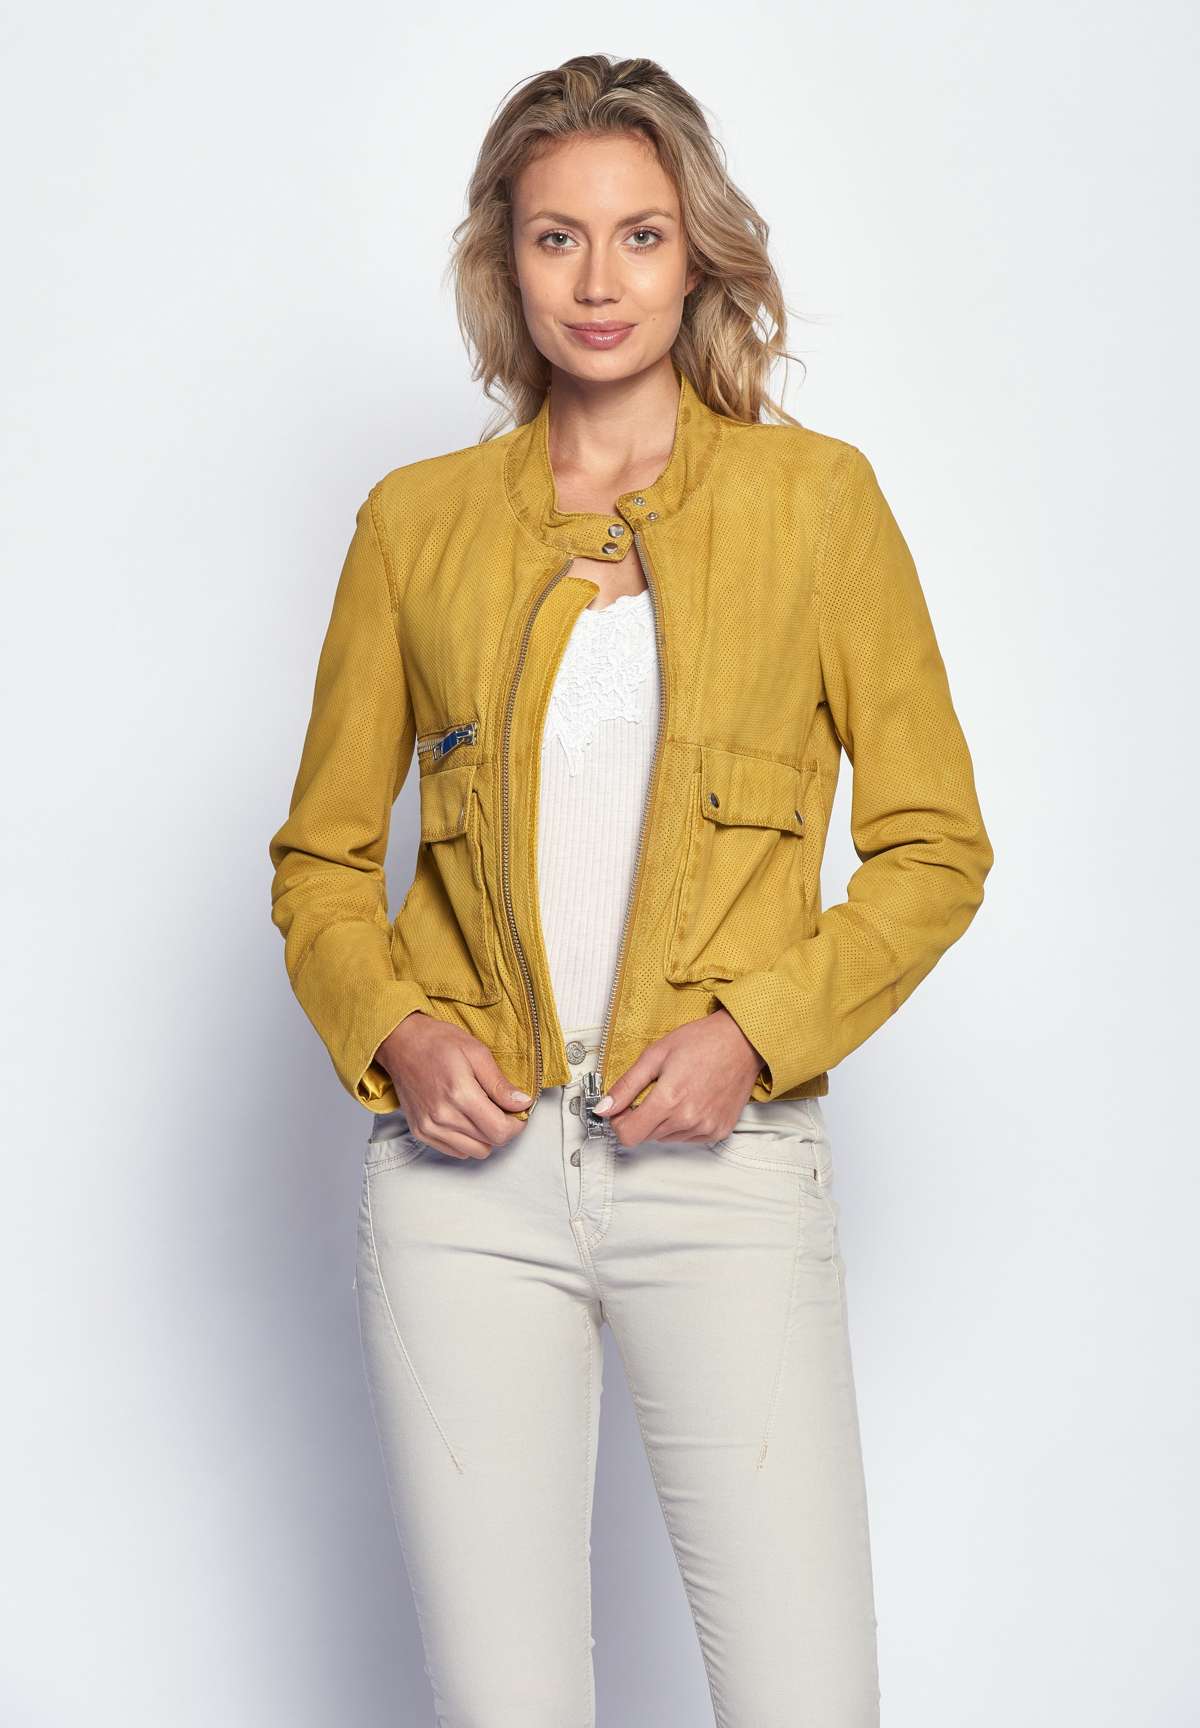 Кожаный пиджак желтый с магазине MAZE JOYLY.RU России в по цвет доставкой купить одежды